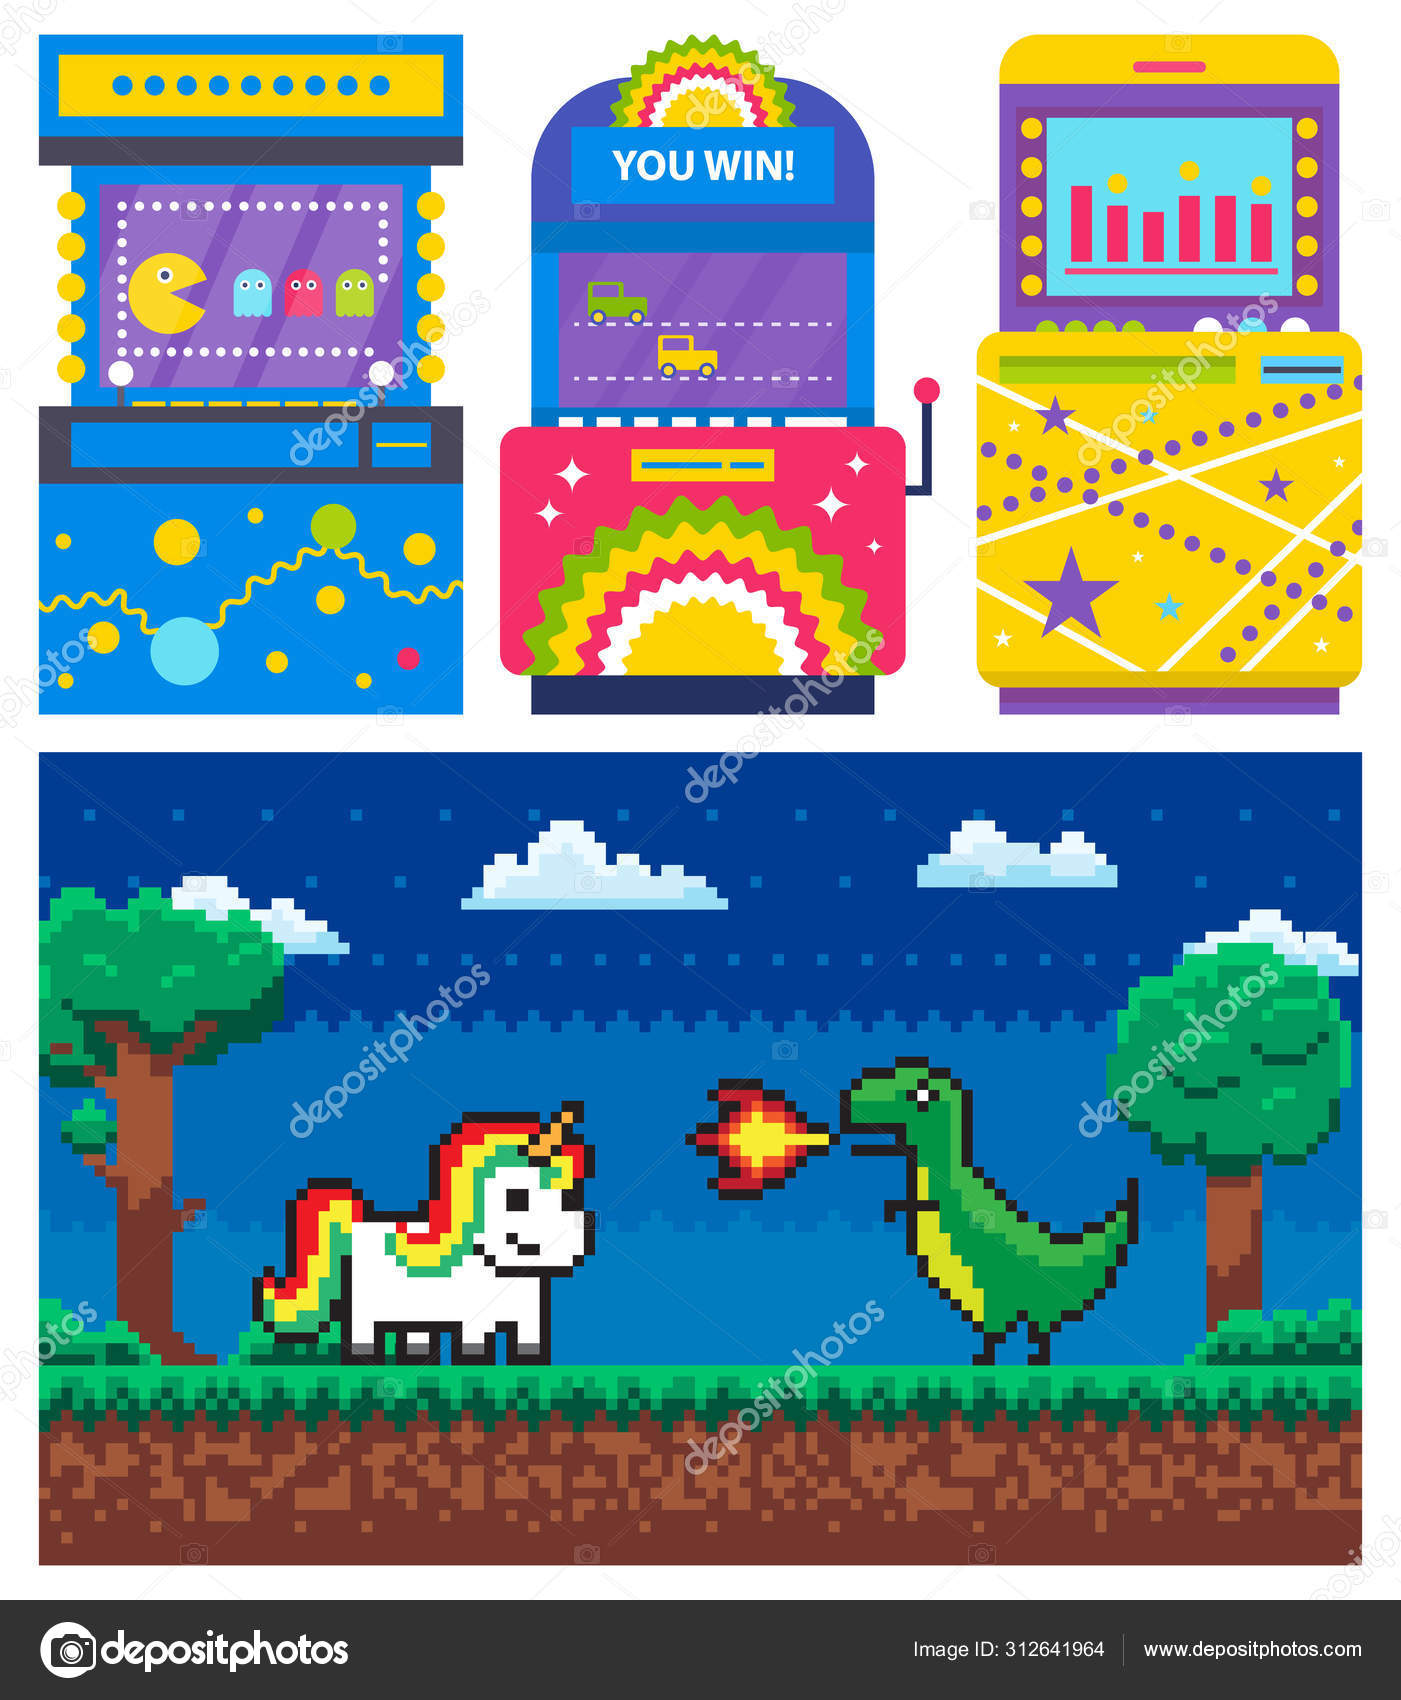 Tela de vitória de jogo de pixel interface de videogame retrô de 8 bits com  fundo de nível de jogo de computador de texto you win ilustração vetorial de  pixel art